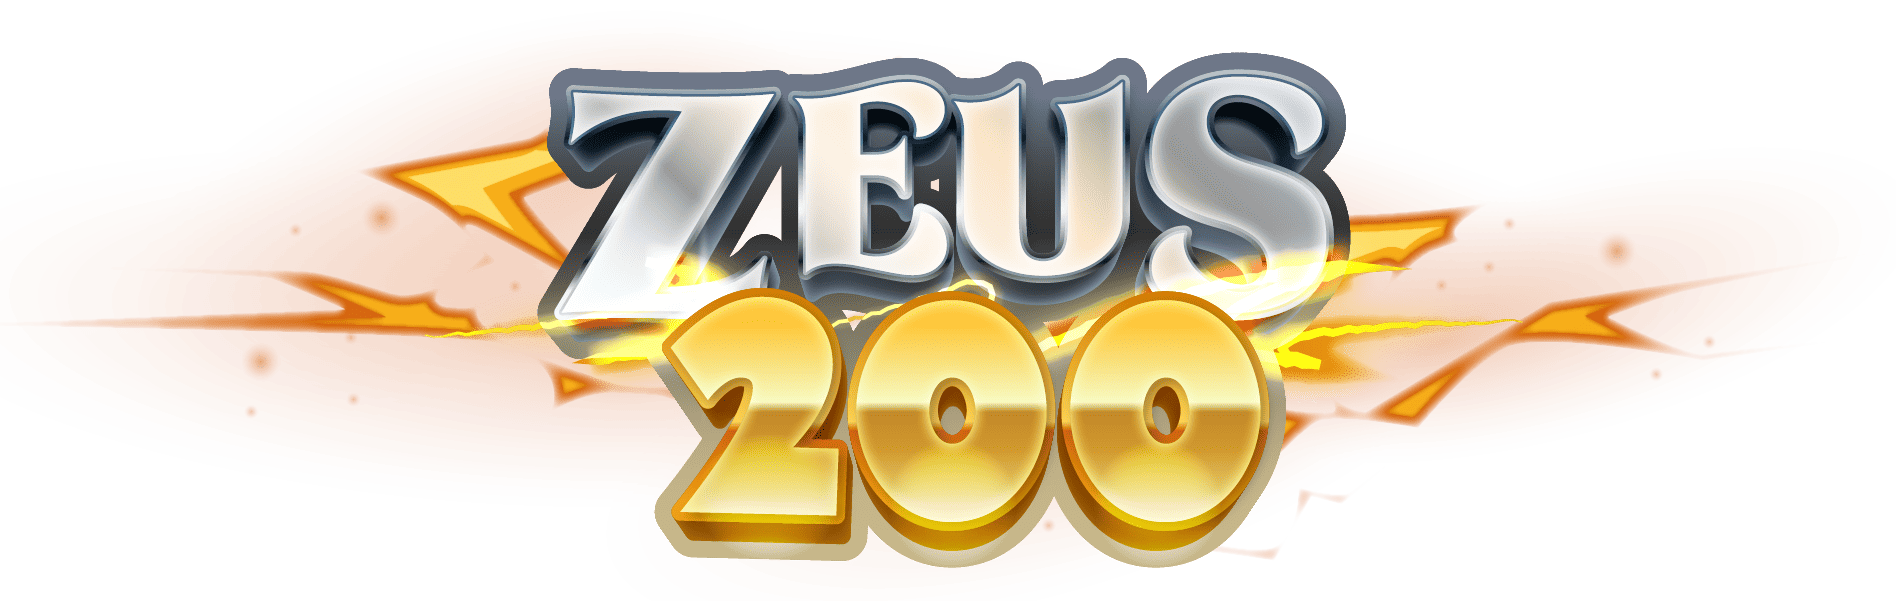 ZEUS200